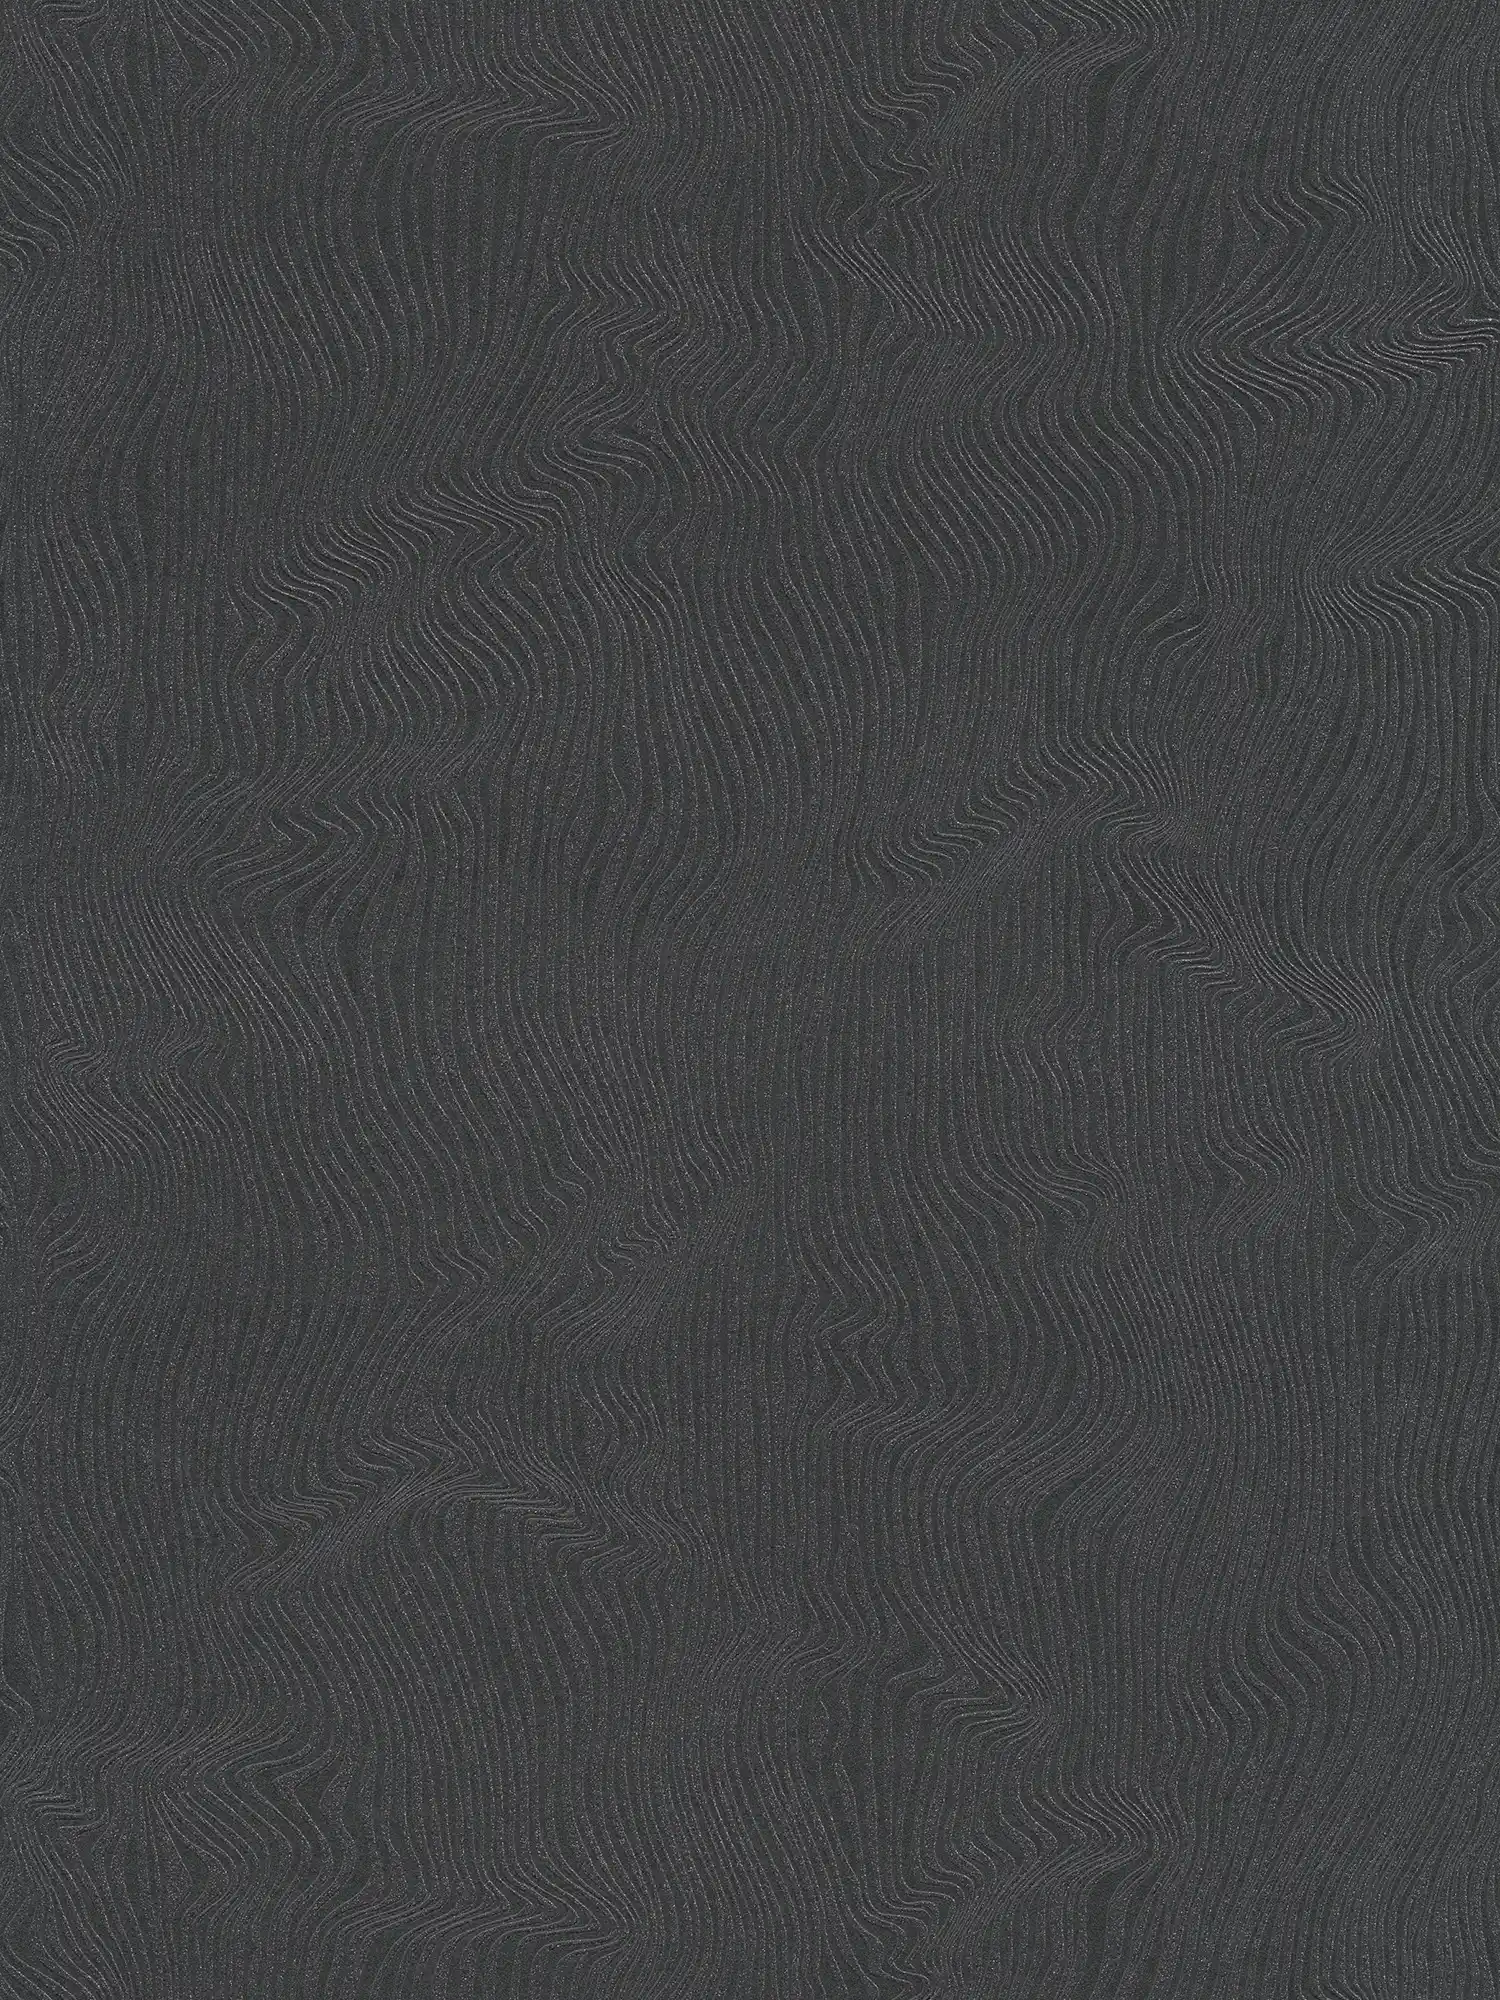 Papier peint uni avec motif de lignes en mouvement - noir
